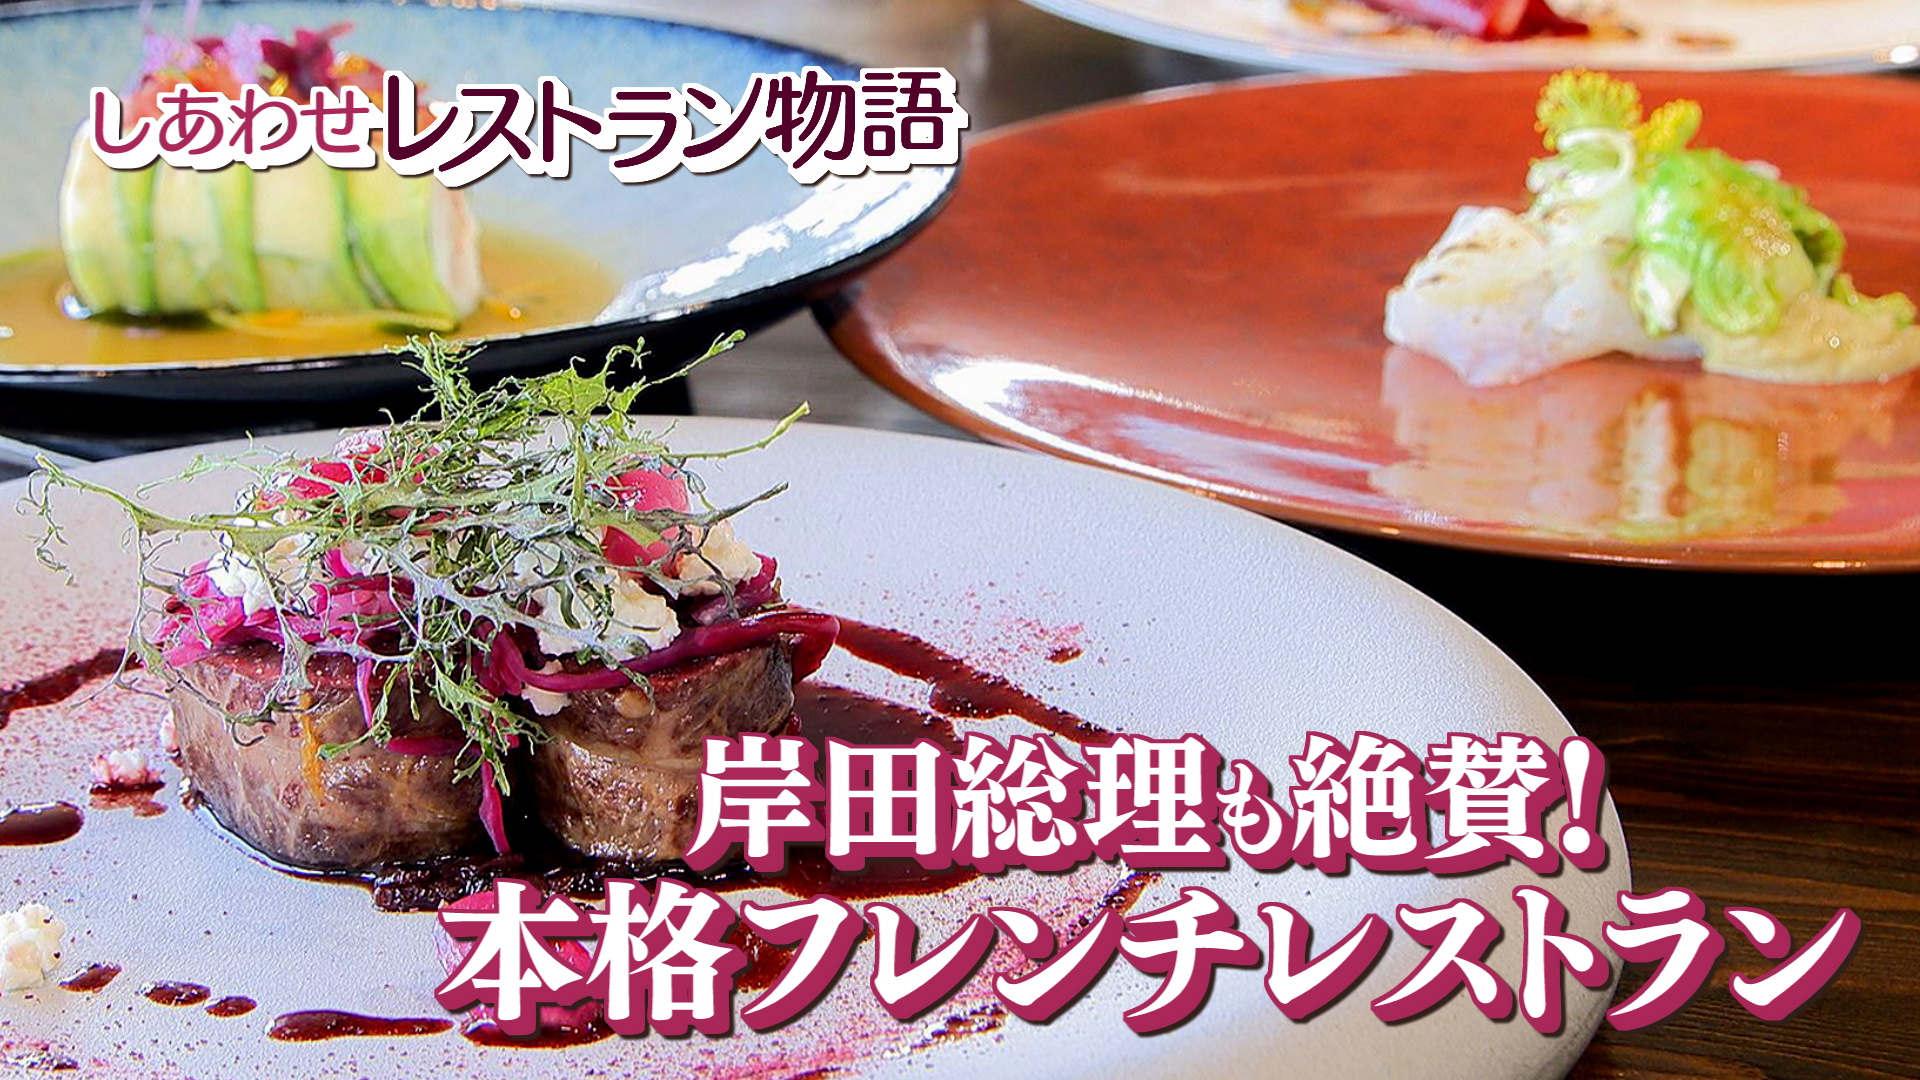 Restaurant ichi / レストラン・イチ